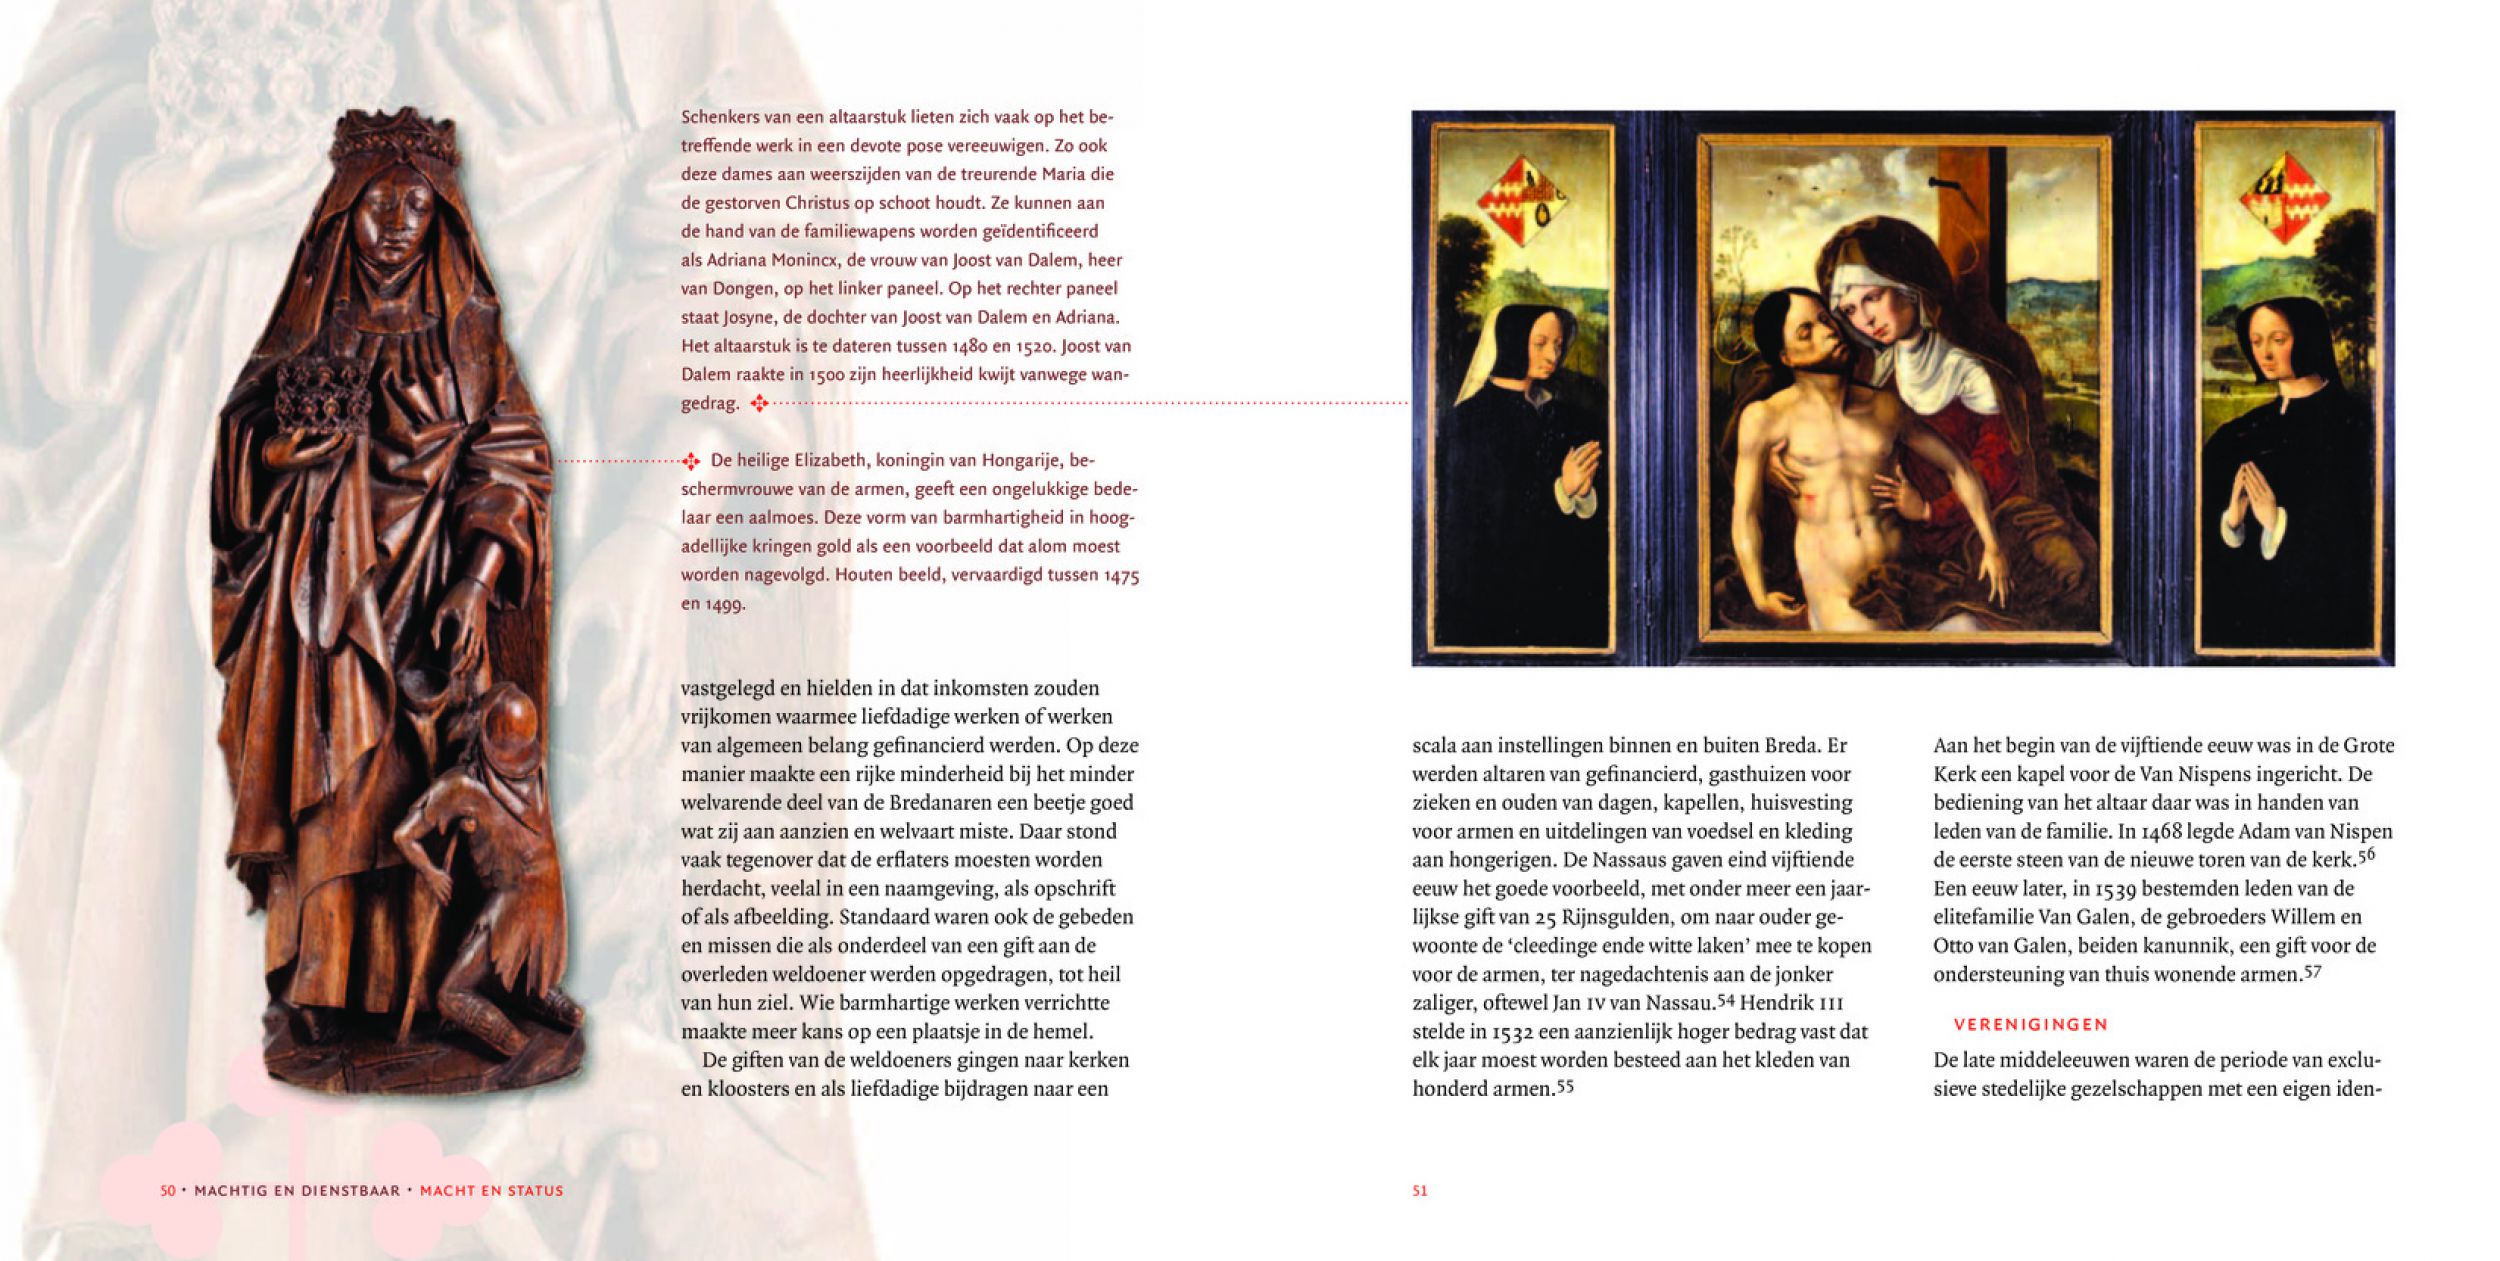 Inkijkexemplaar van het boek: <em>Machtig en dienstbaar. De Bredase elite tussen 1350 en 1550</em> - © Uitgeverij Matrijs